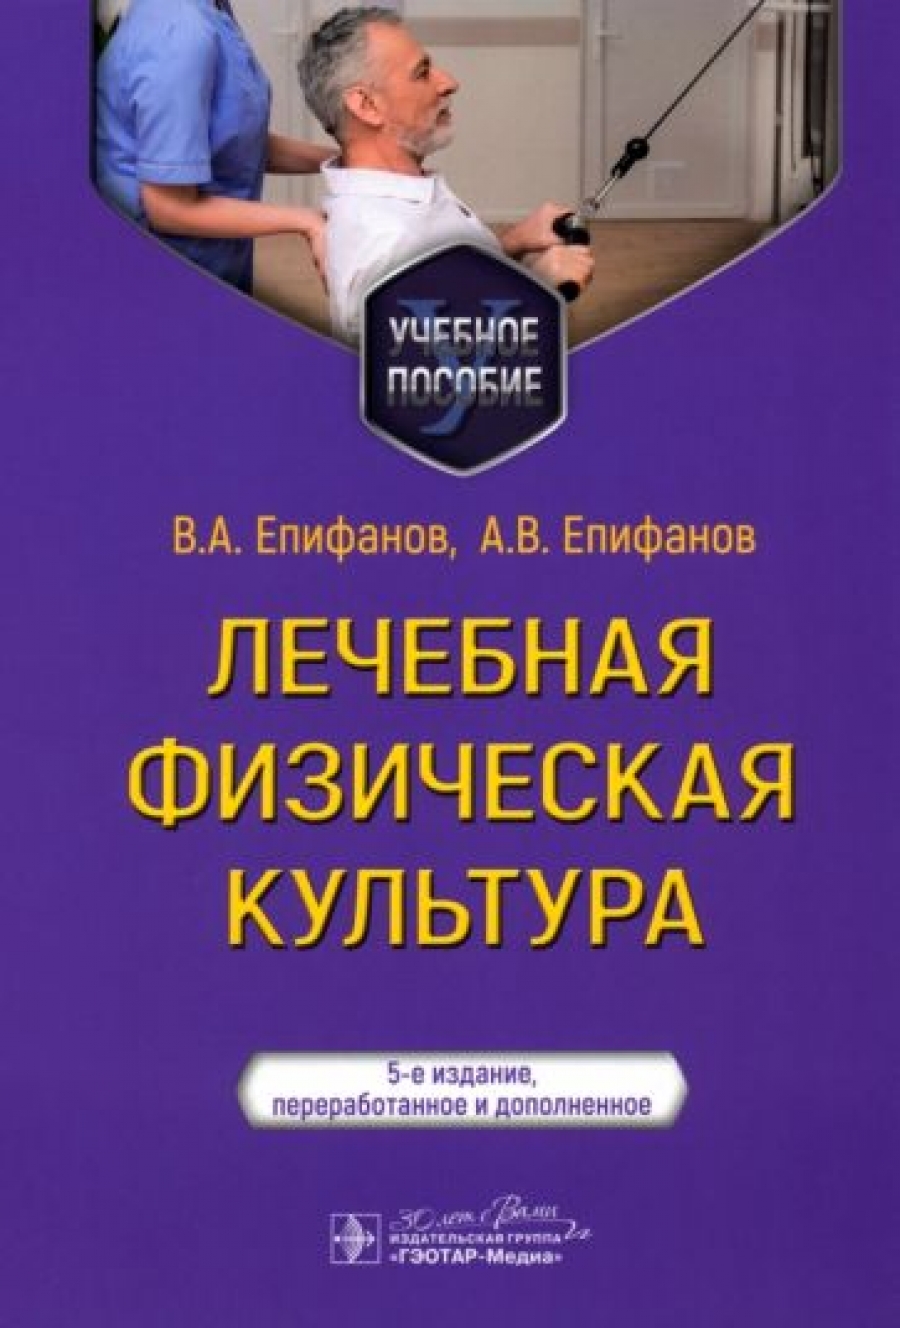 Епифанов В.А., Епифанов А.В. Лечебная физическая культура : учебное пособие 